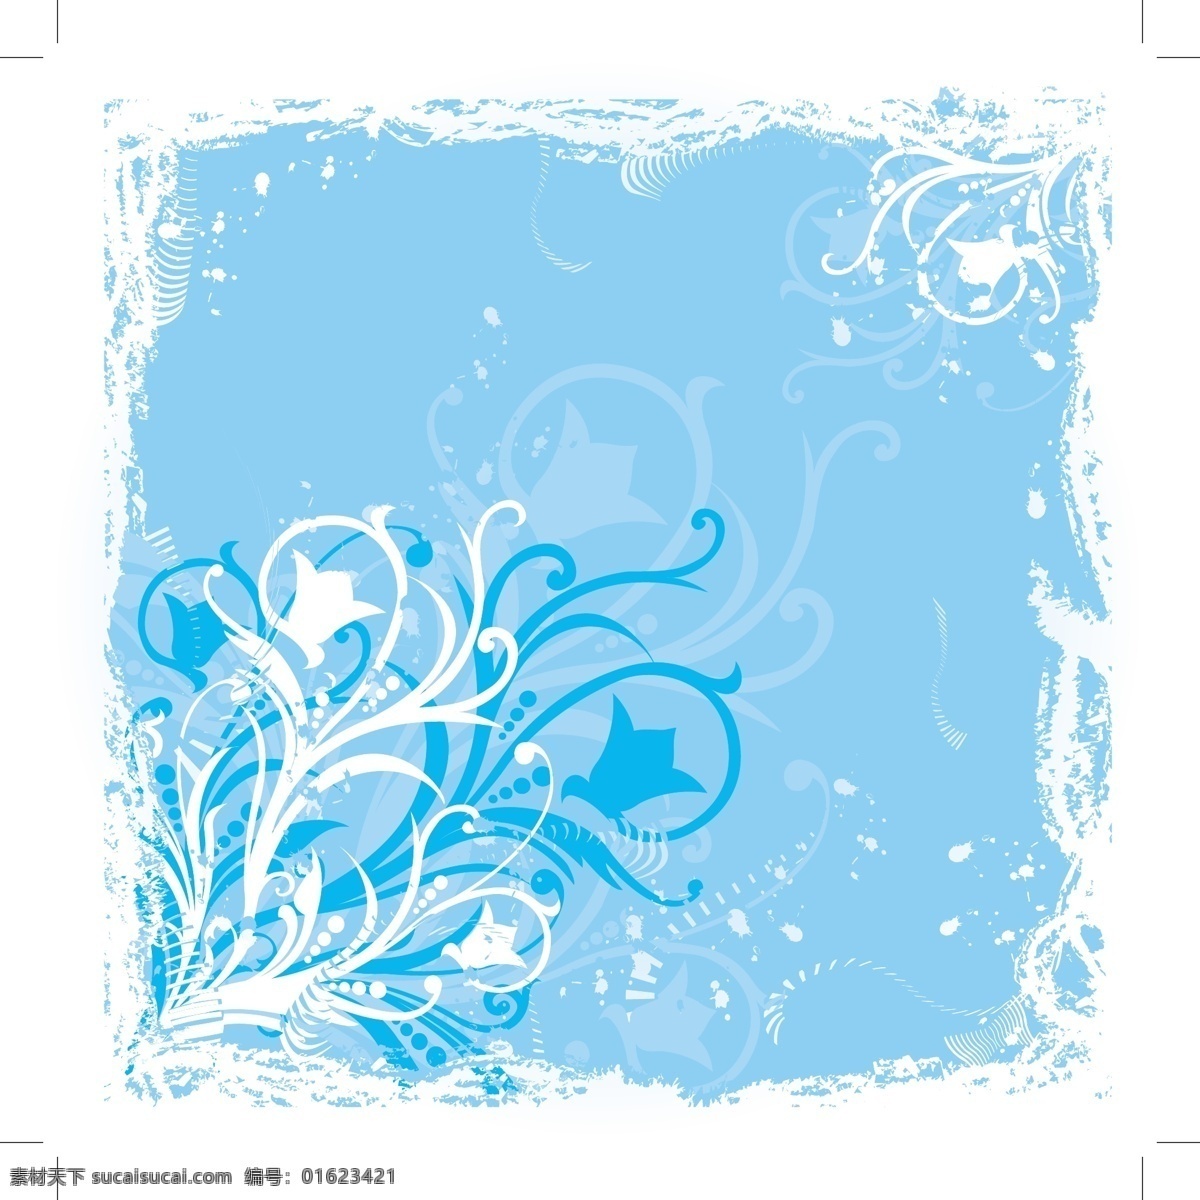 蓝色的花图形 垃圾 自然 花卉 植物 有机的 抽象的 漩涡 背景 滚动 框架 自然元素 闪光